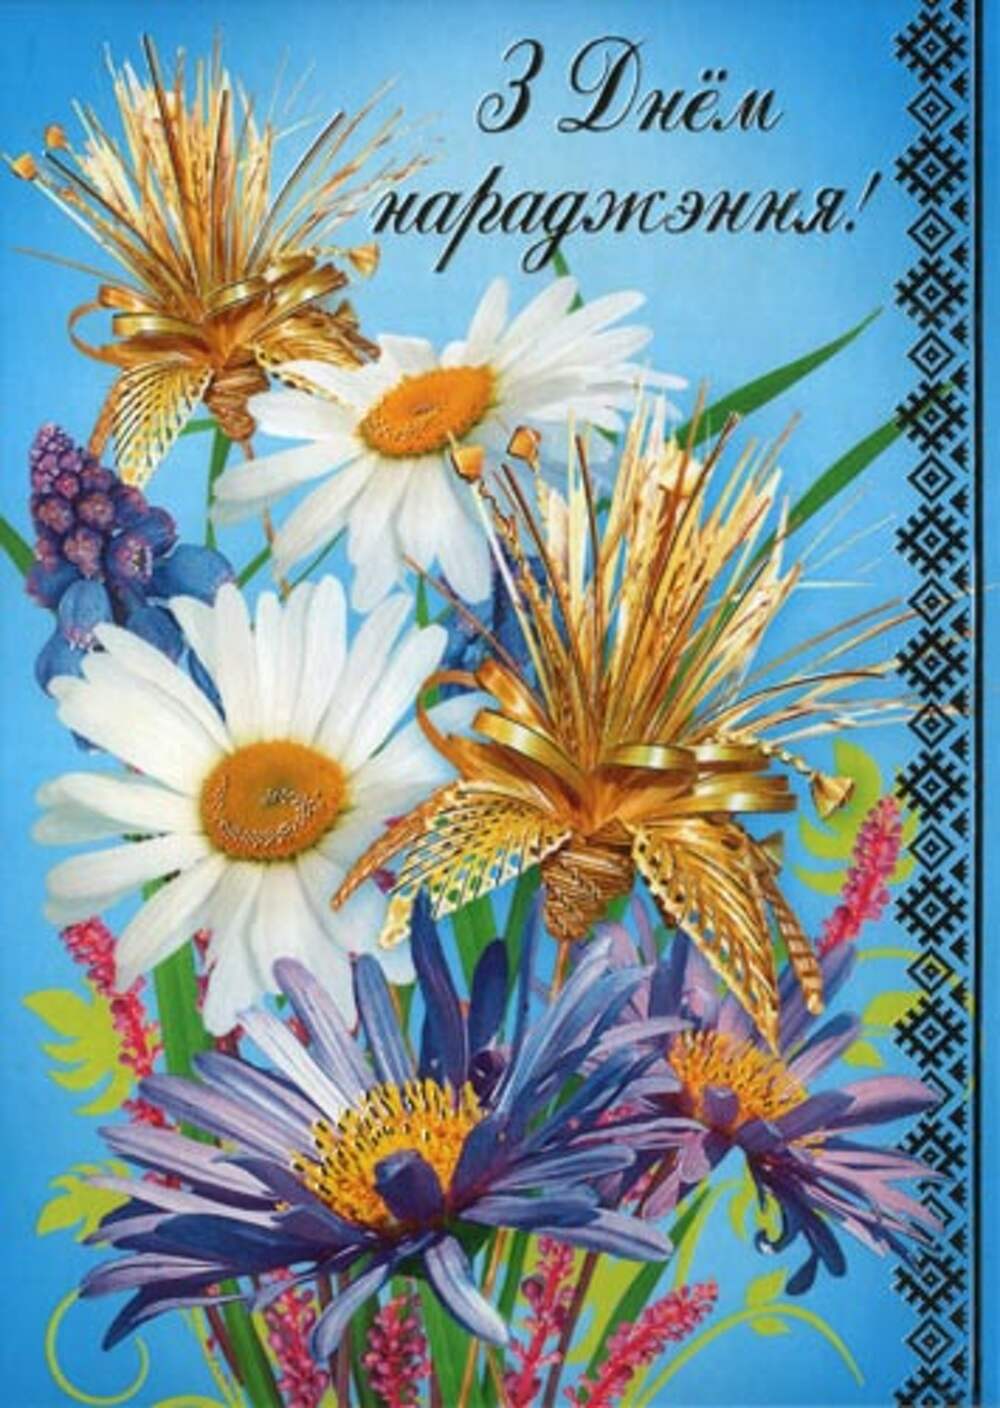 Картинки с поздравлениями белорусские. Поздравление на белорусском языке с днем рождения. Открытки с днём рождения на белорусском языке. З днём нараджэння. Поздравления с днём рождения на беларускай мове.